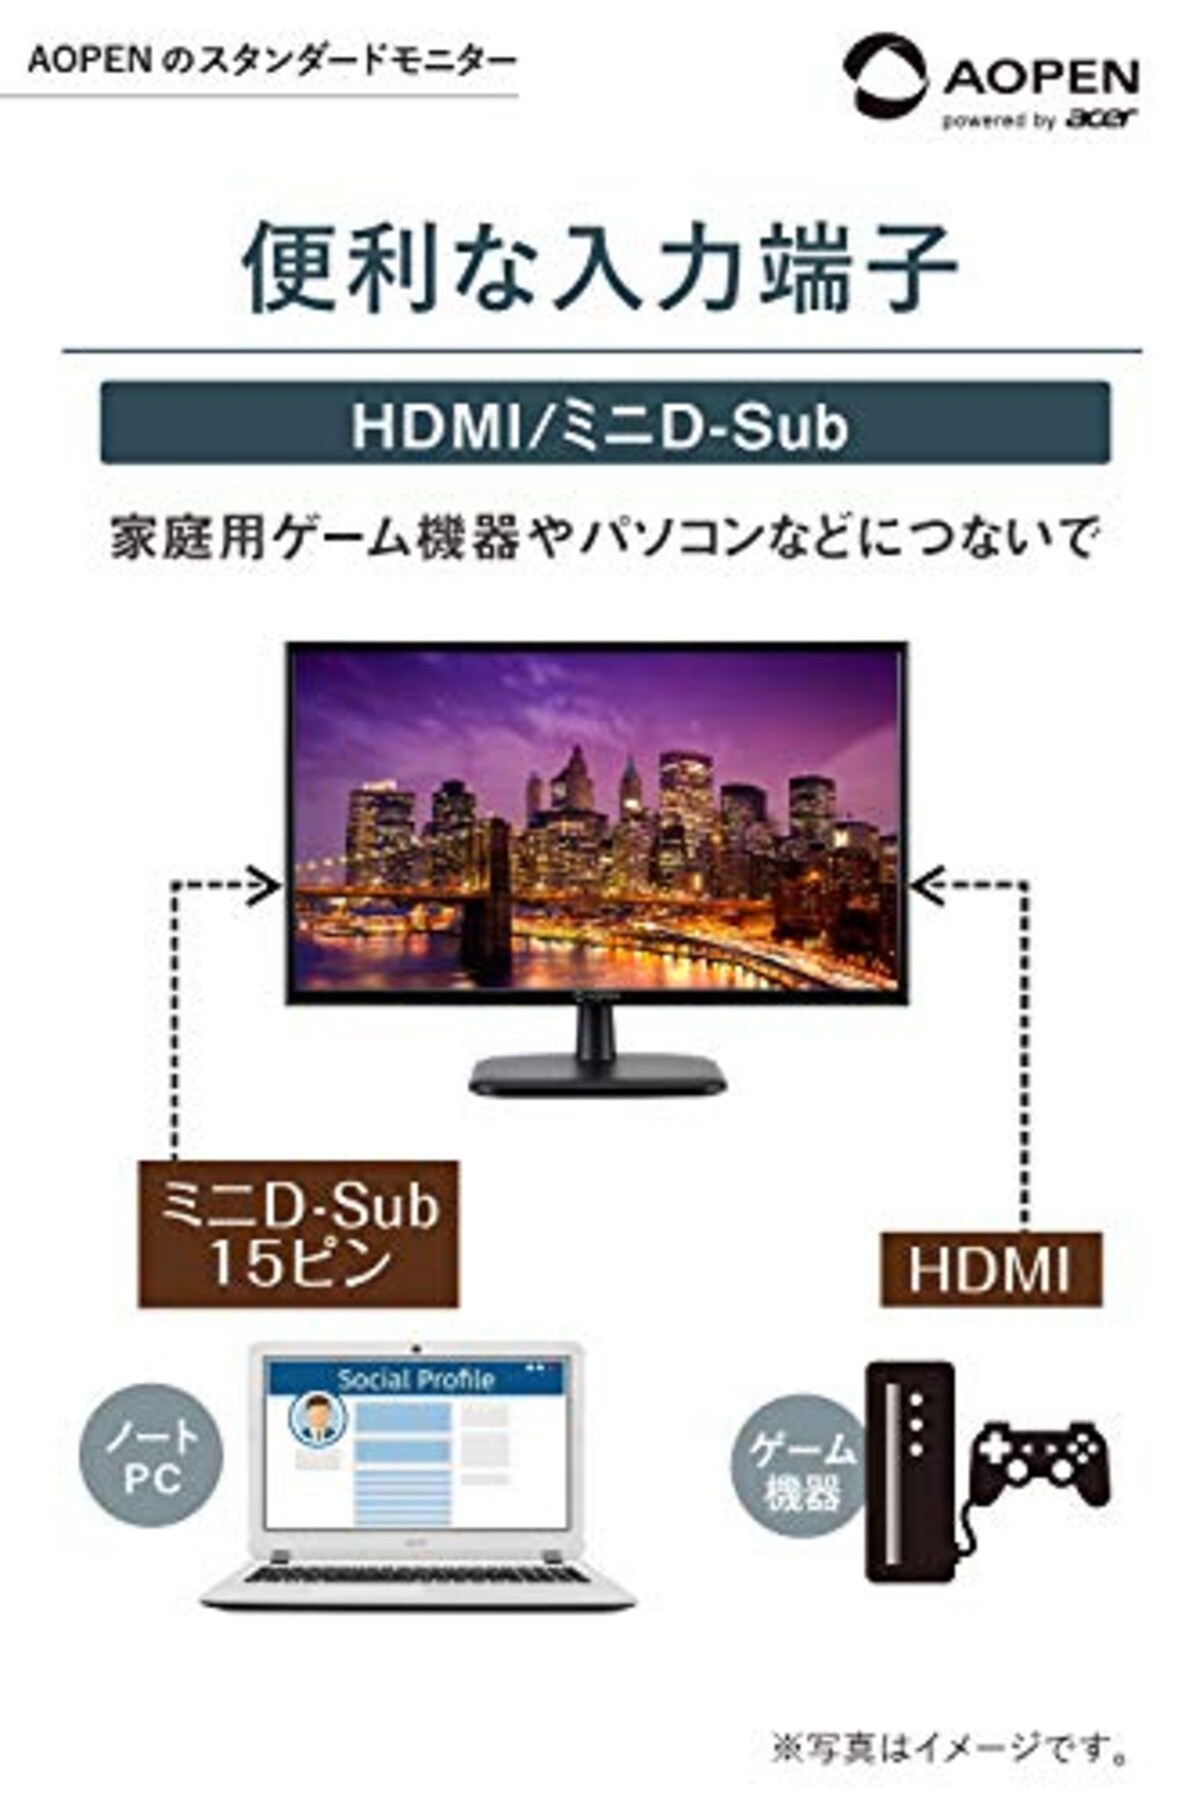  AOPEN モニター 24CL1Ybi 23.8インチ 75Hz 5ms IPS フルHD HDMI スピーカー無し VESA ディスプレイ 3年保証画像5 